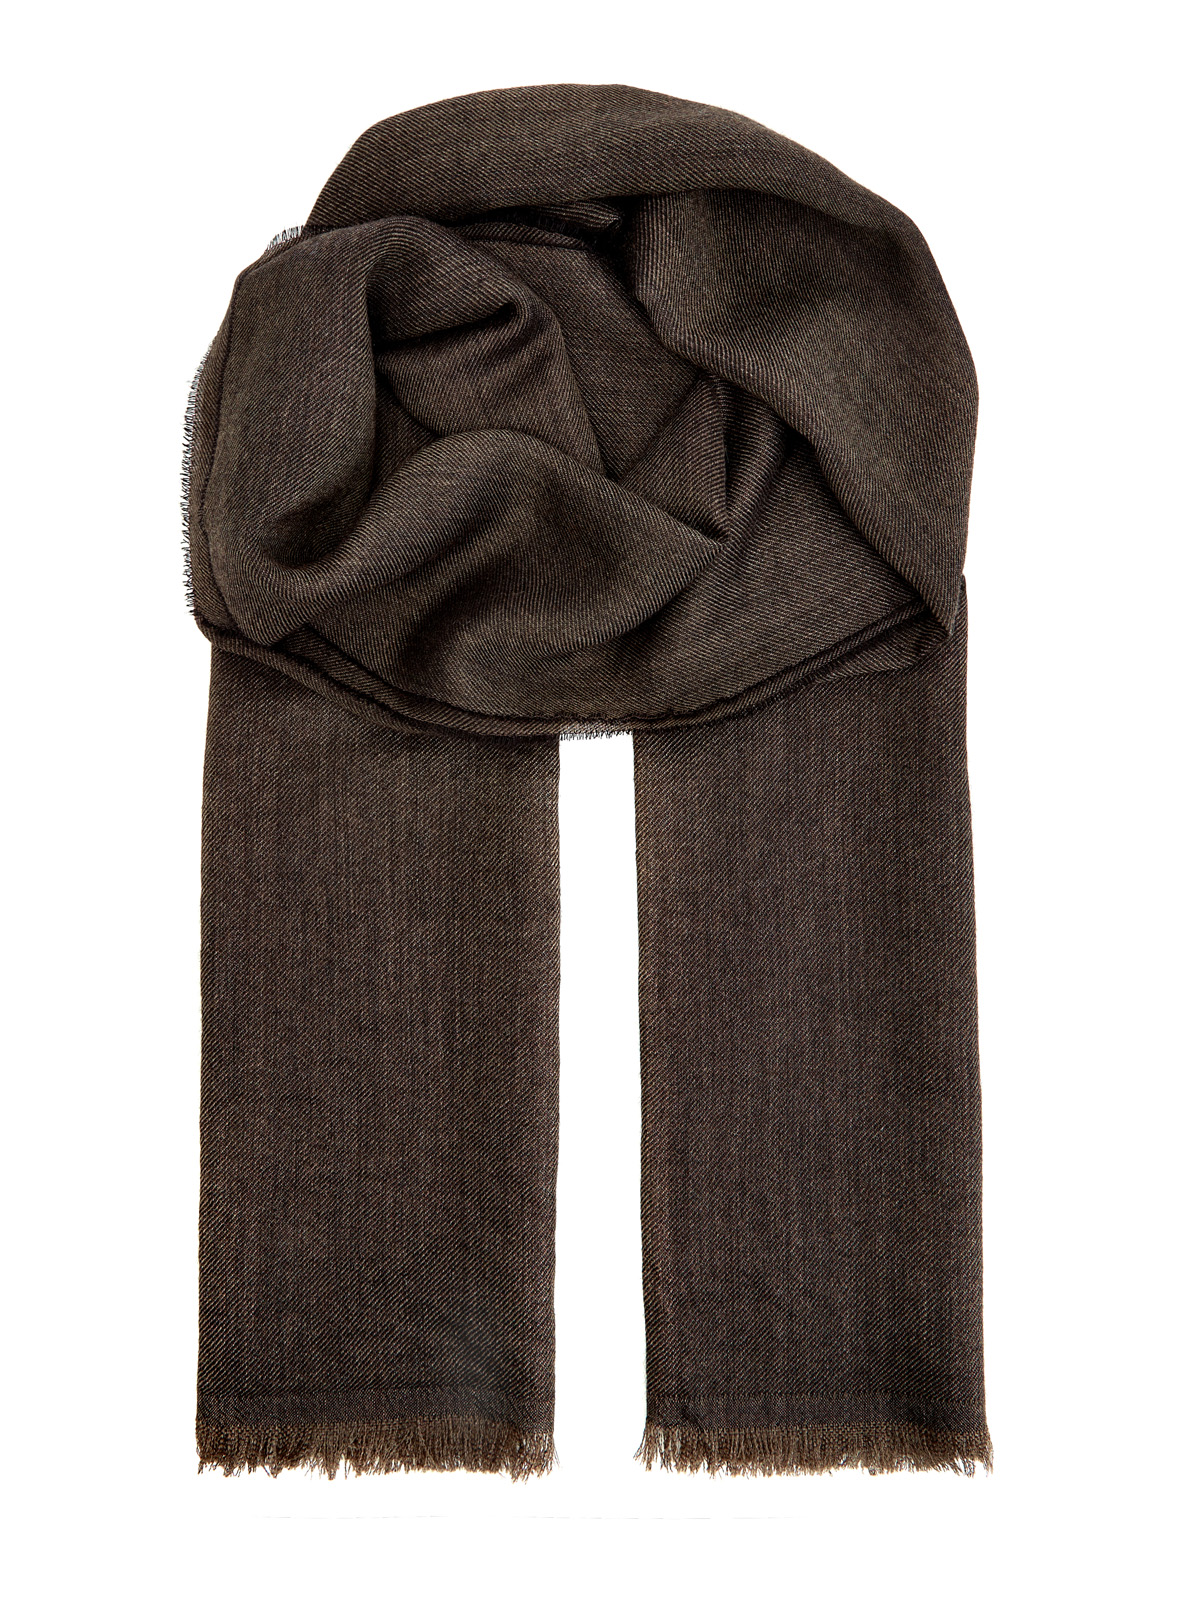 Кашемировый шарф с волокнами шелка в коричневой гамме BERTOLO CASHMERE, цвет коричневый, размер 58